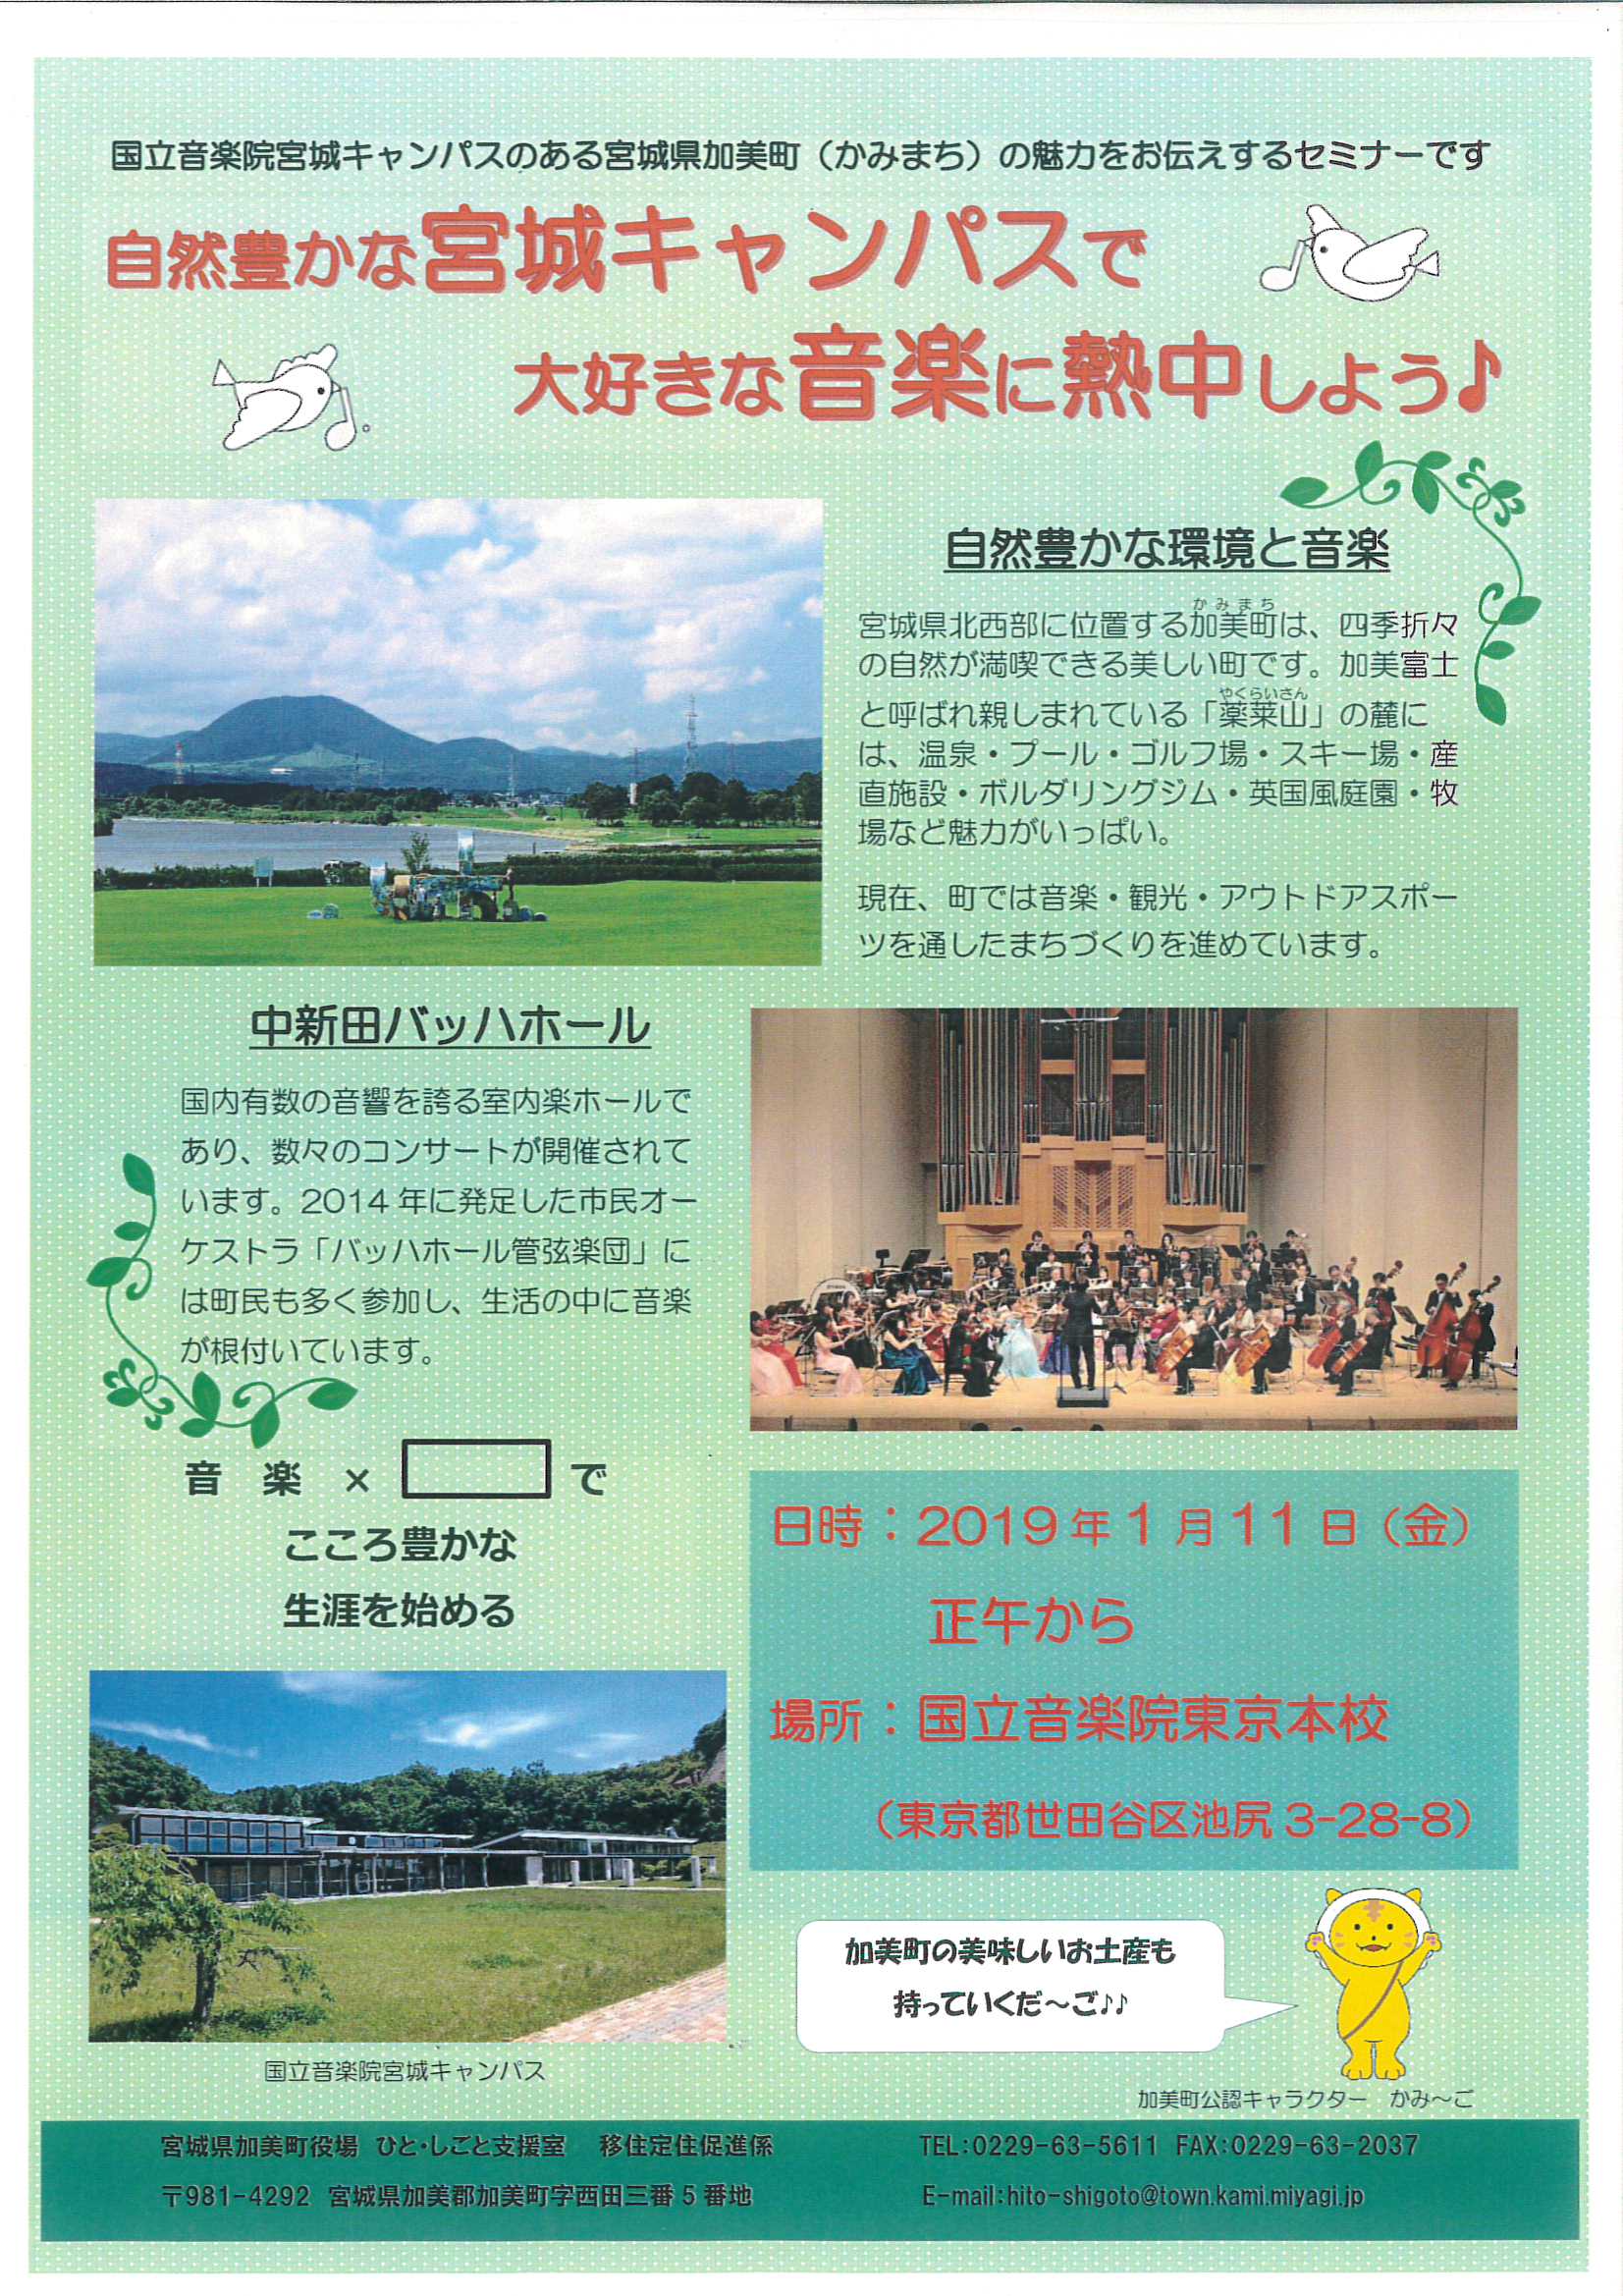 セミナーの情報が掲載されたフライヤー。宮城県北西部に位置する加美町のご紹介が、自然豊かな町の風景とともに書かれています。